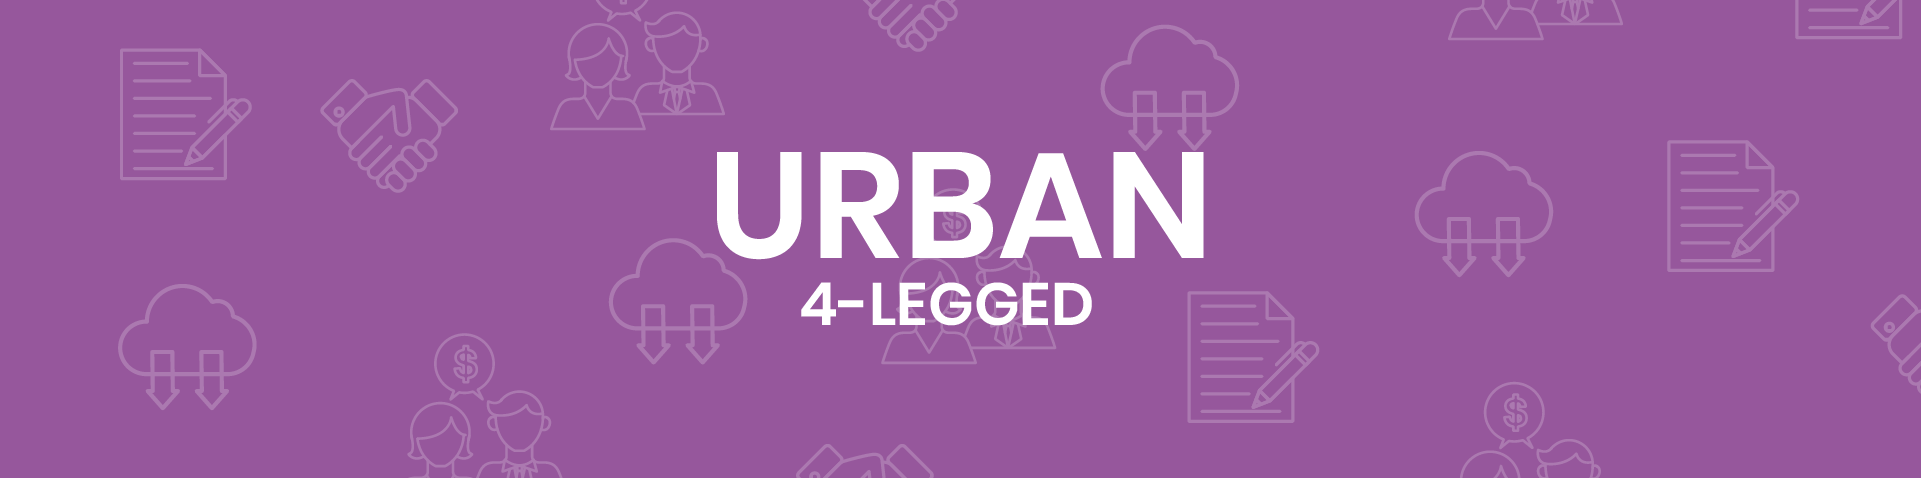 Urban 4-Legged